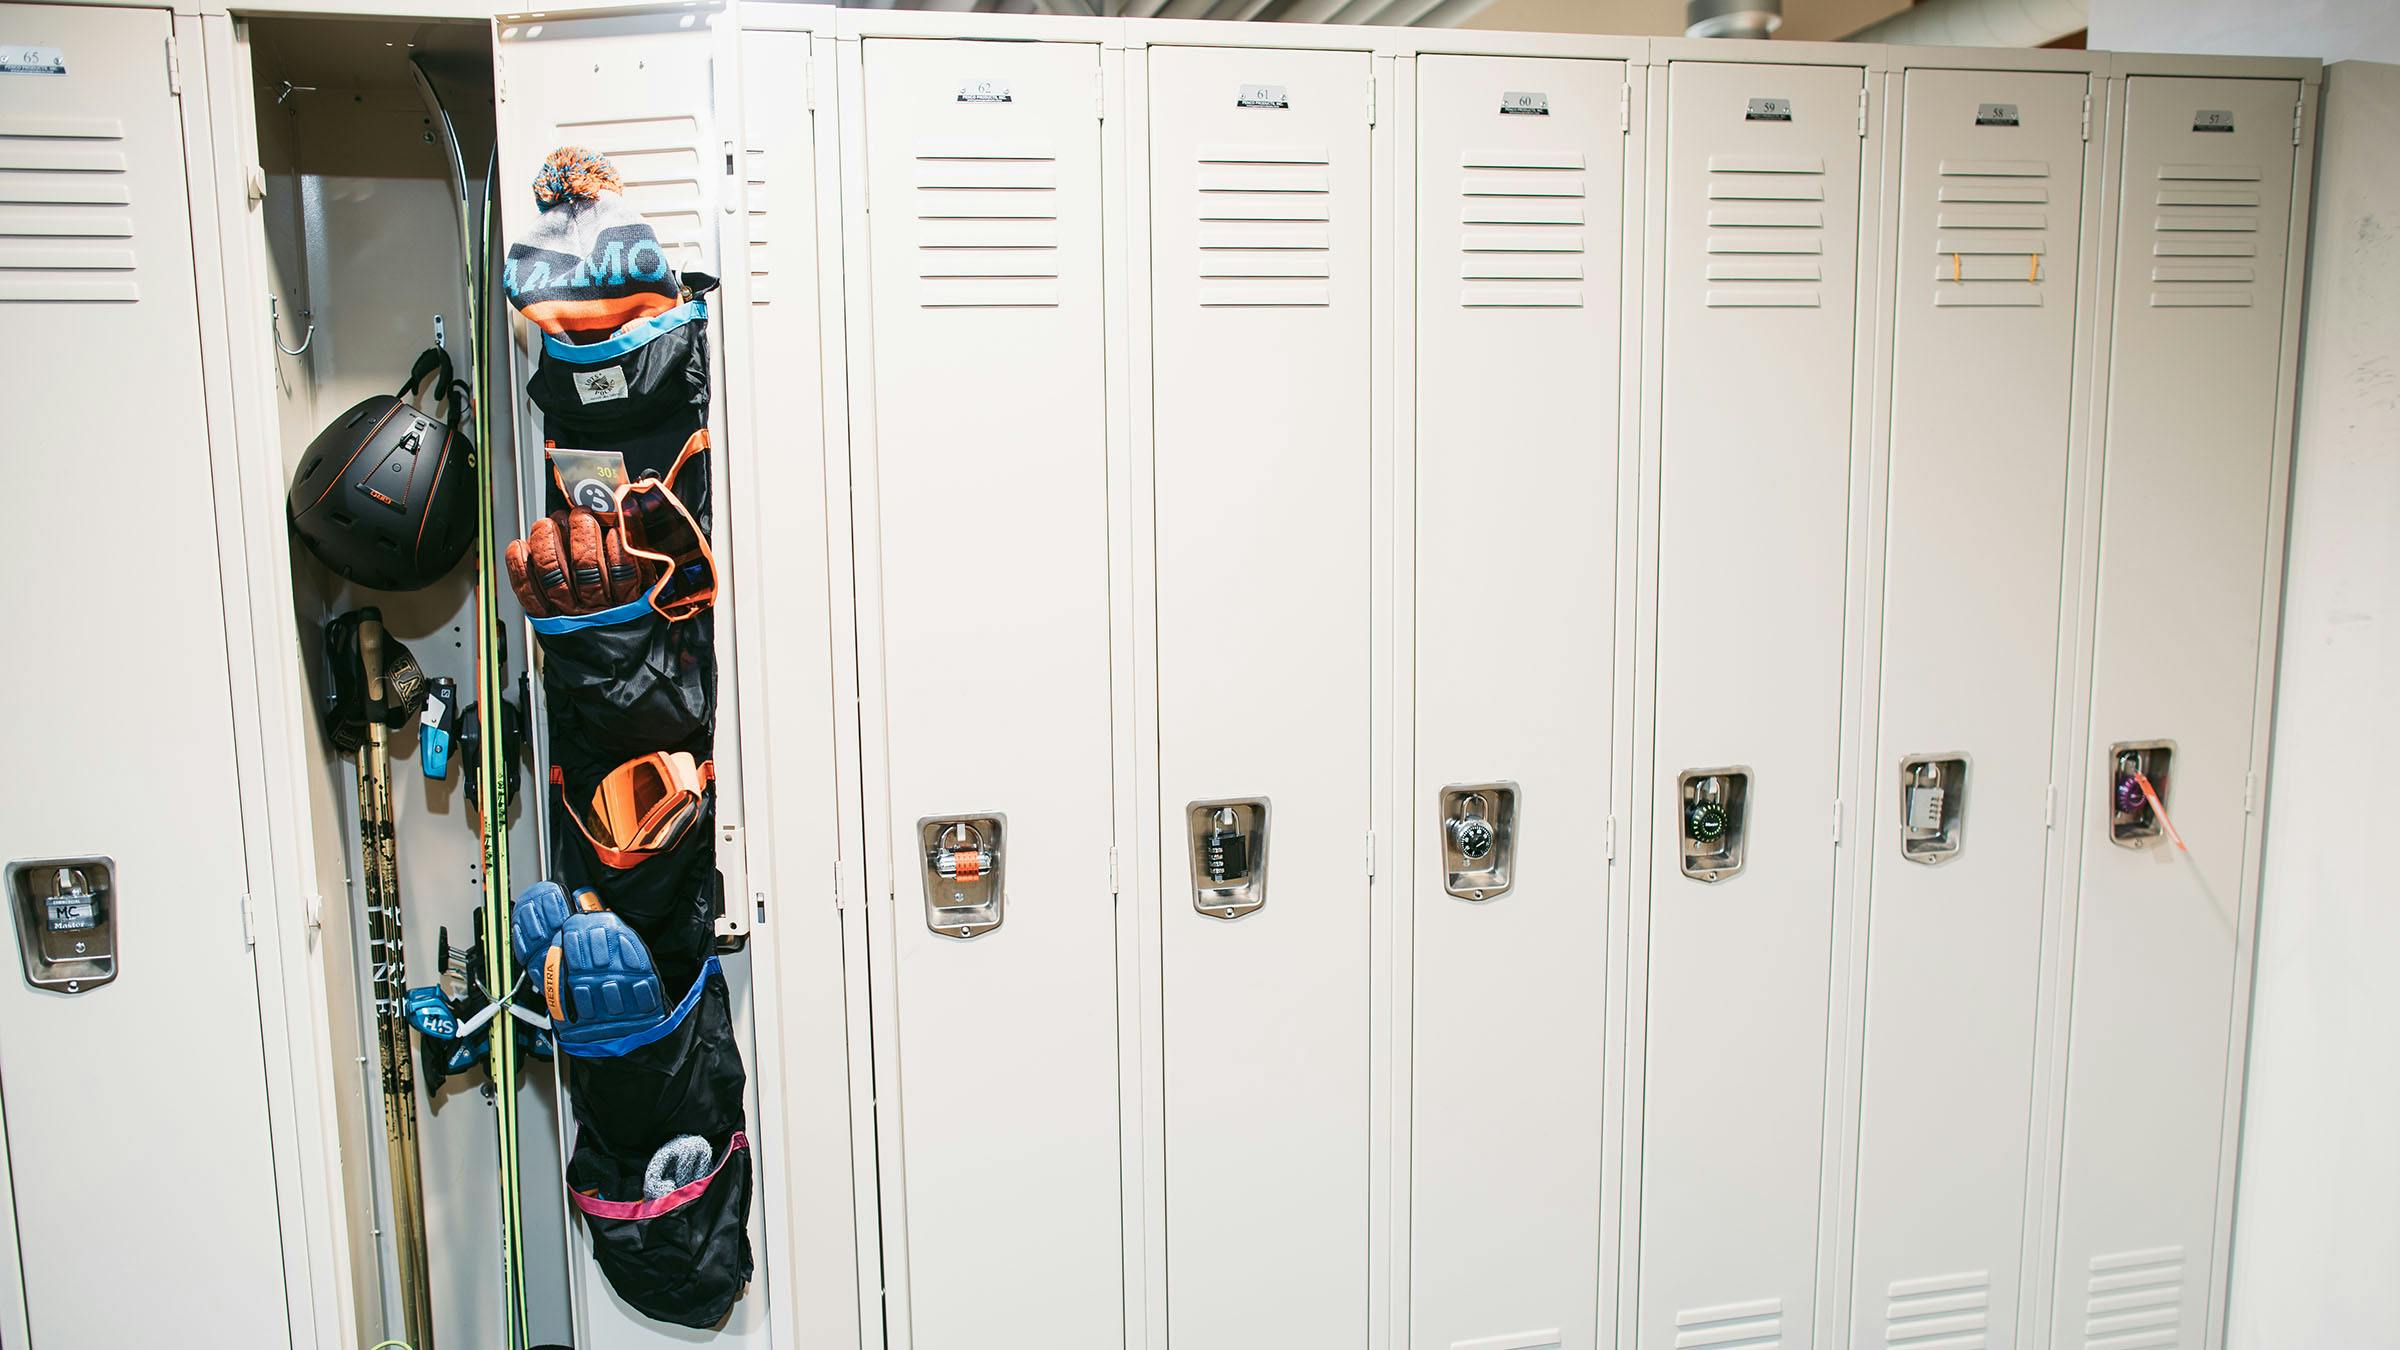 Open locker with ski gear